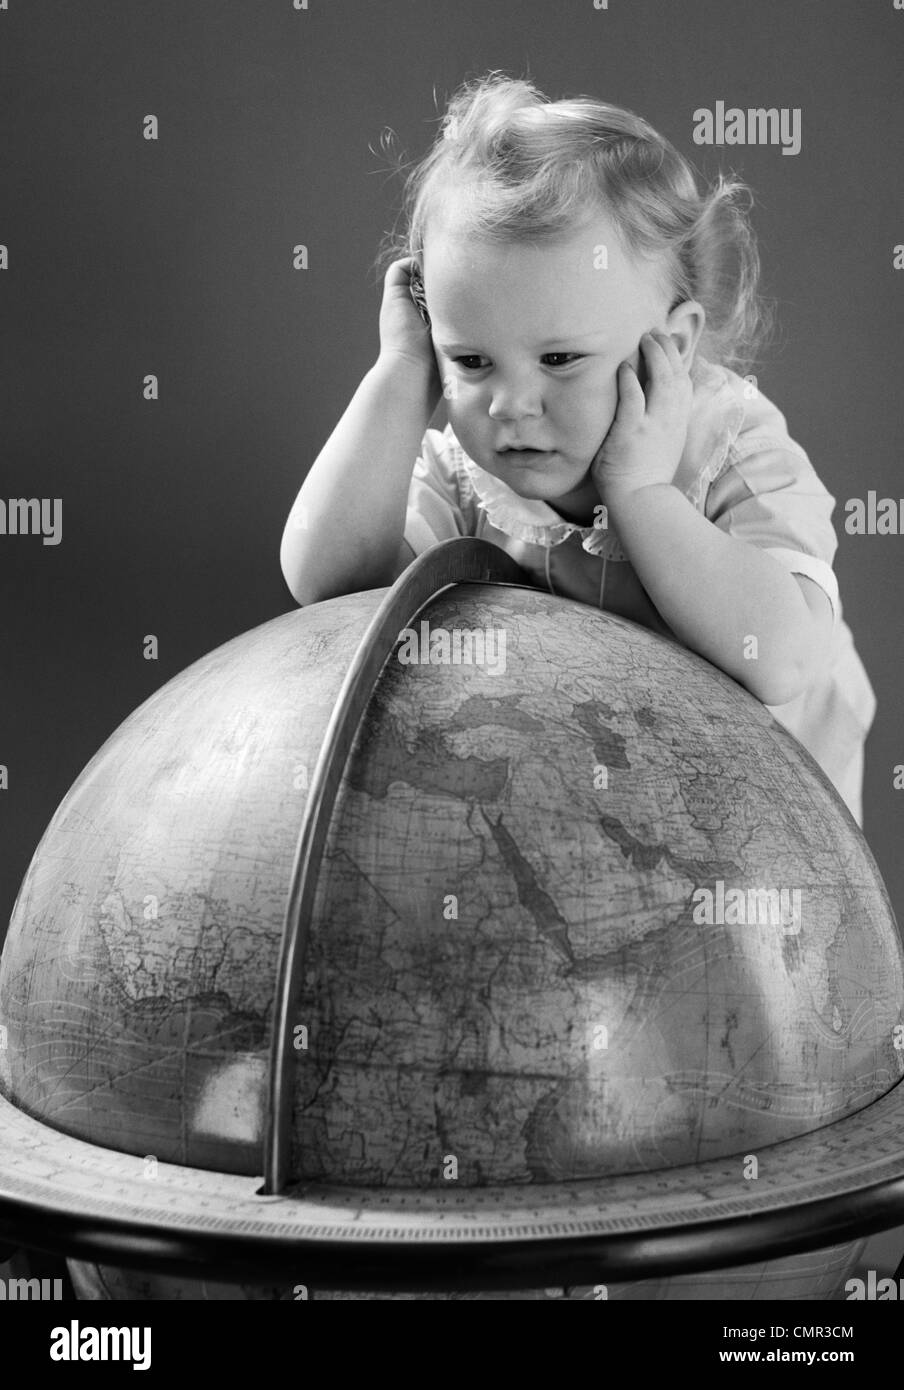 1940s BABY GUARDANDO appoggiata sul globo terrestre DI MESSA A TERRA Foto Stock